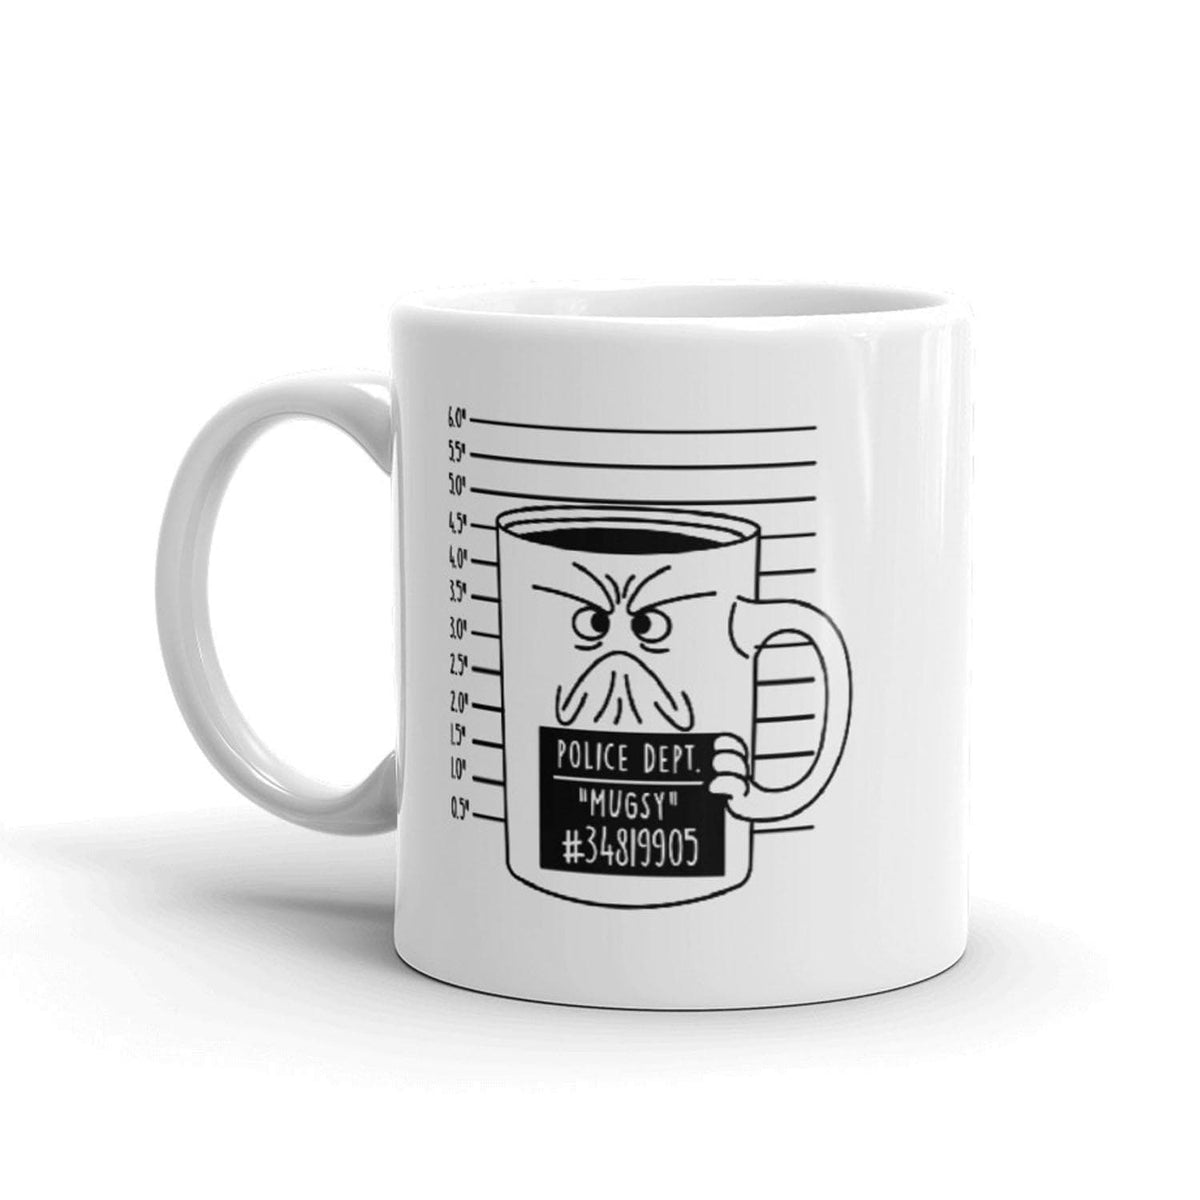 Coffee Mug Shot Mug Funny Sarcastic Ceramic Cup-11oz - Crazy Dog T-Shirts